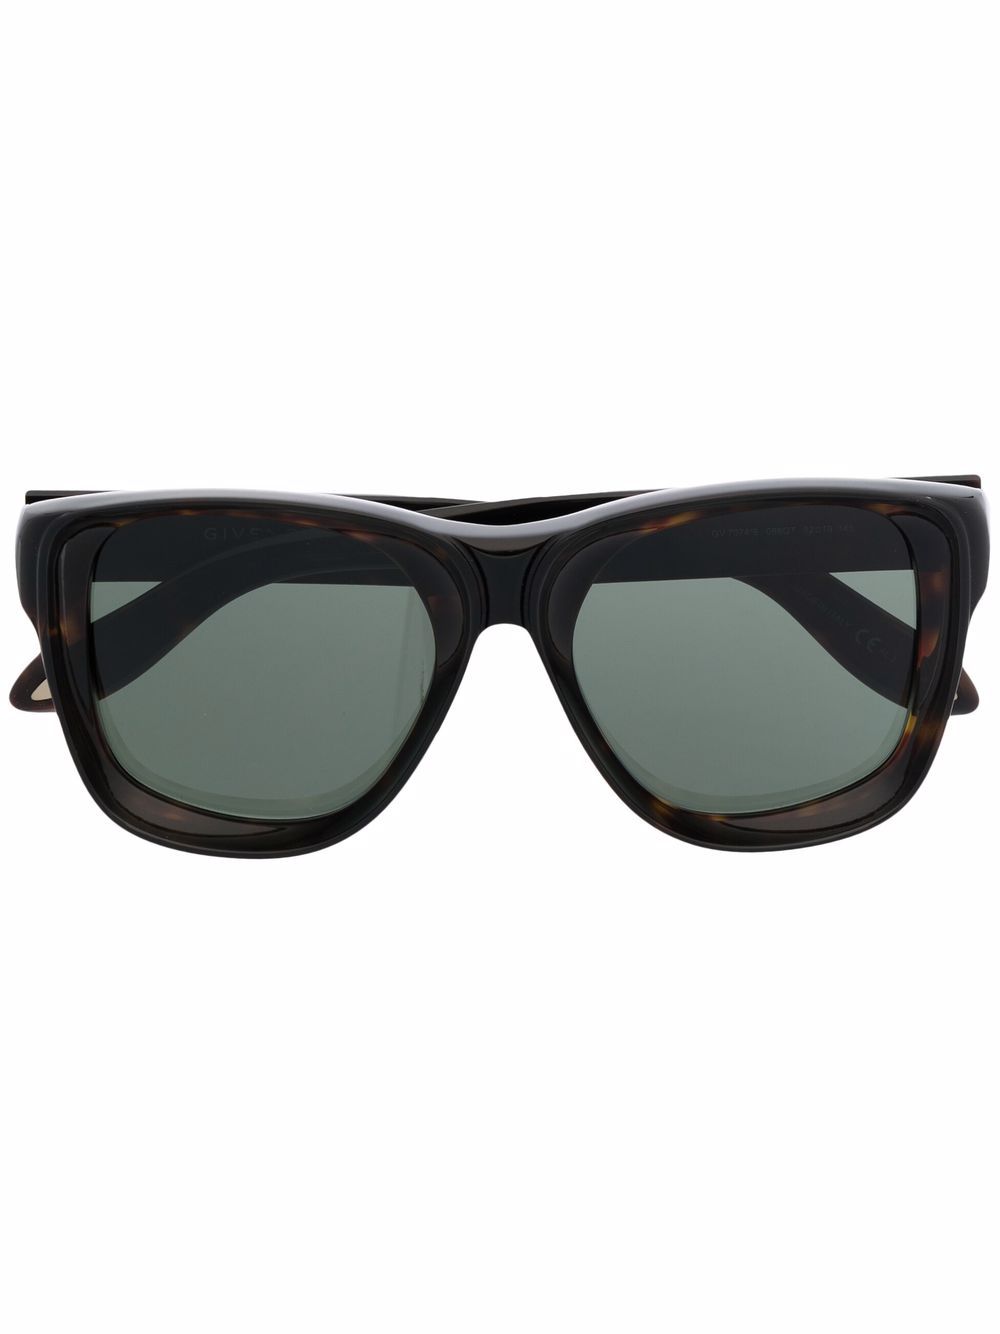 фото Givenchy eyewear солнцезащитные очки в оправе черепаховой расцветки